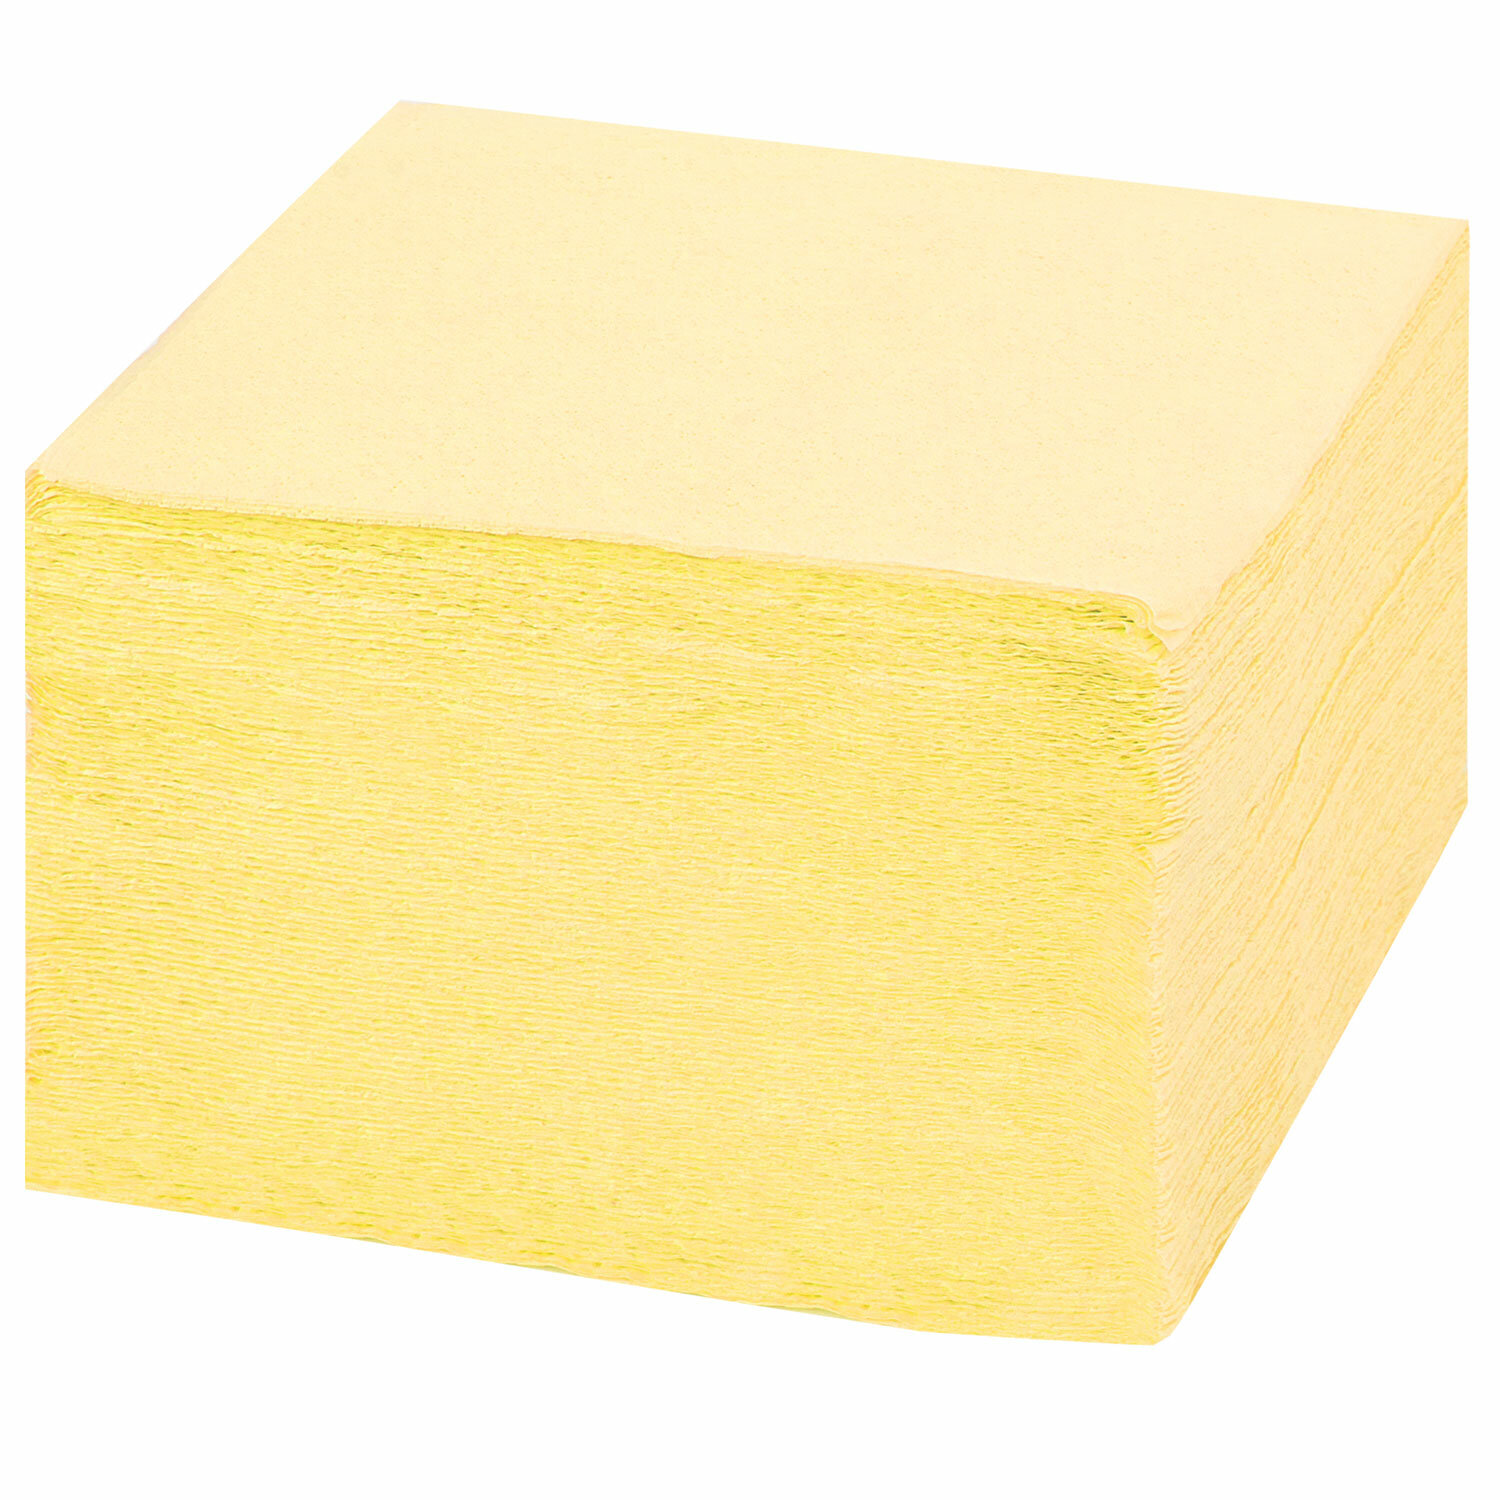 76 х 9. Блок-кубик куб 76х76, желтый неон 400 л Attache. BRAUBERG блок самоклеящийся неоновый, 76х76 мм, 400 листов (126686) 8 цветом. Блок самоклеящийся 76х76 мм, 400 листов, желтый.